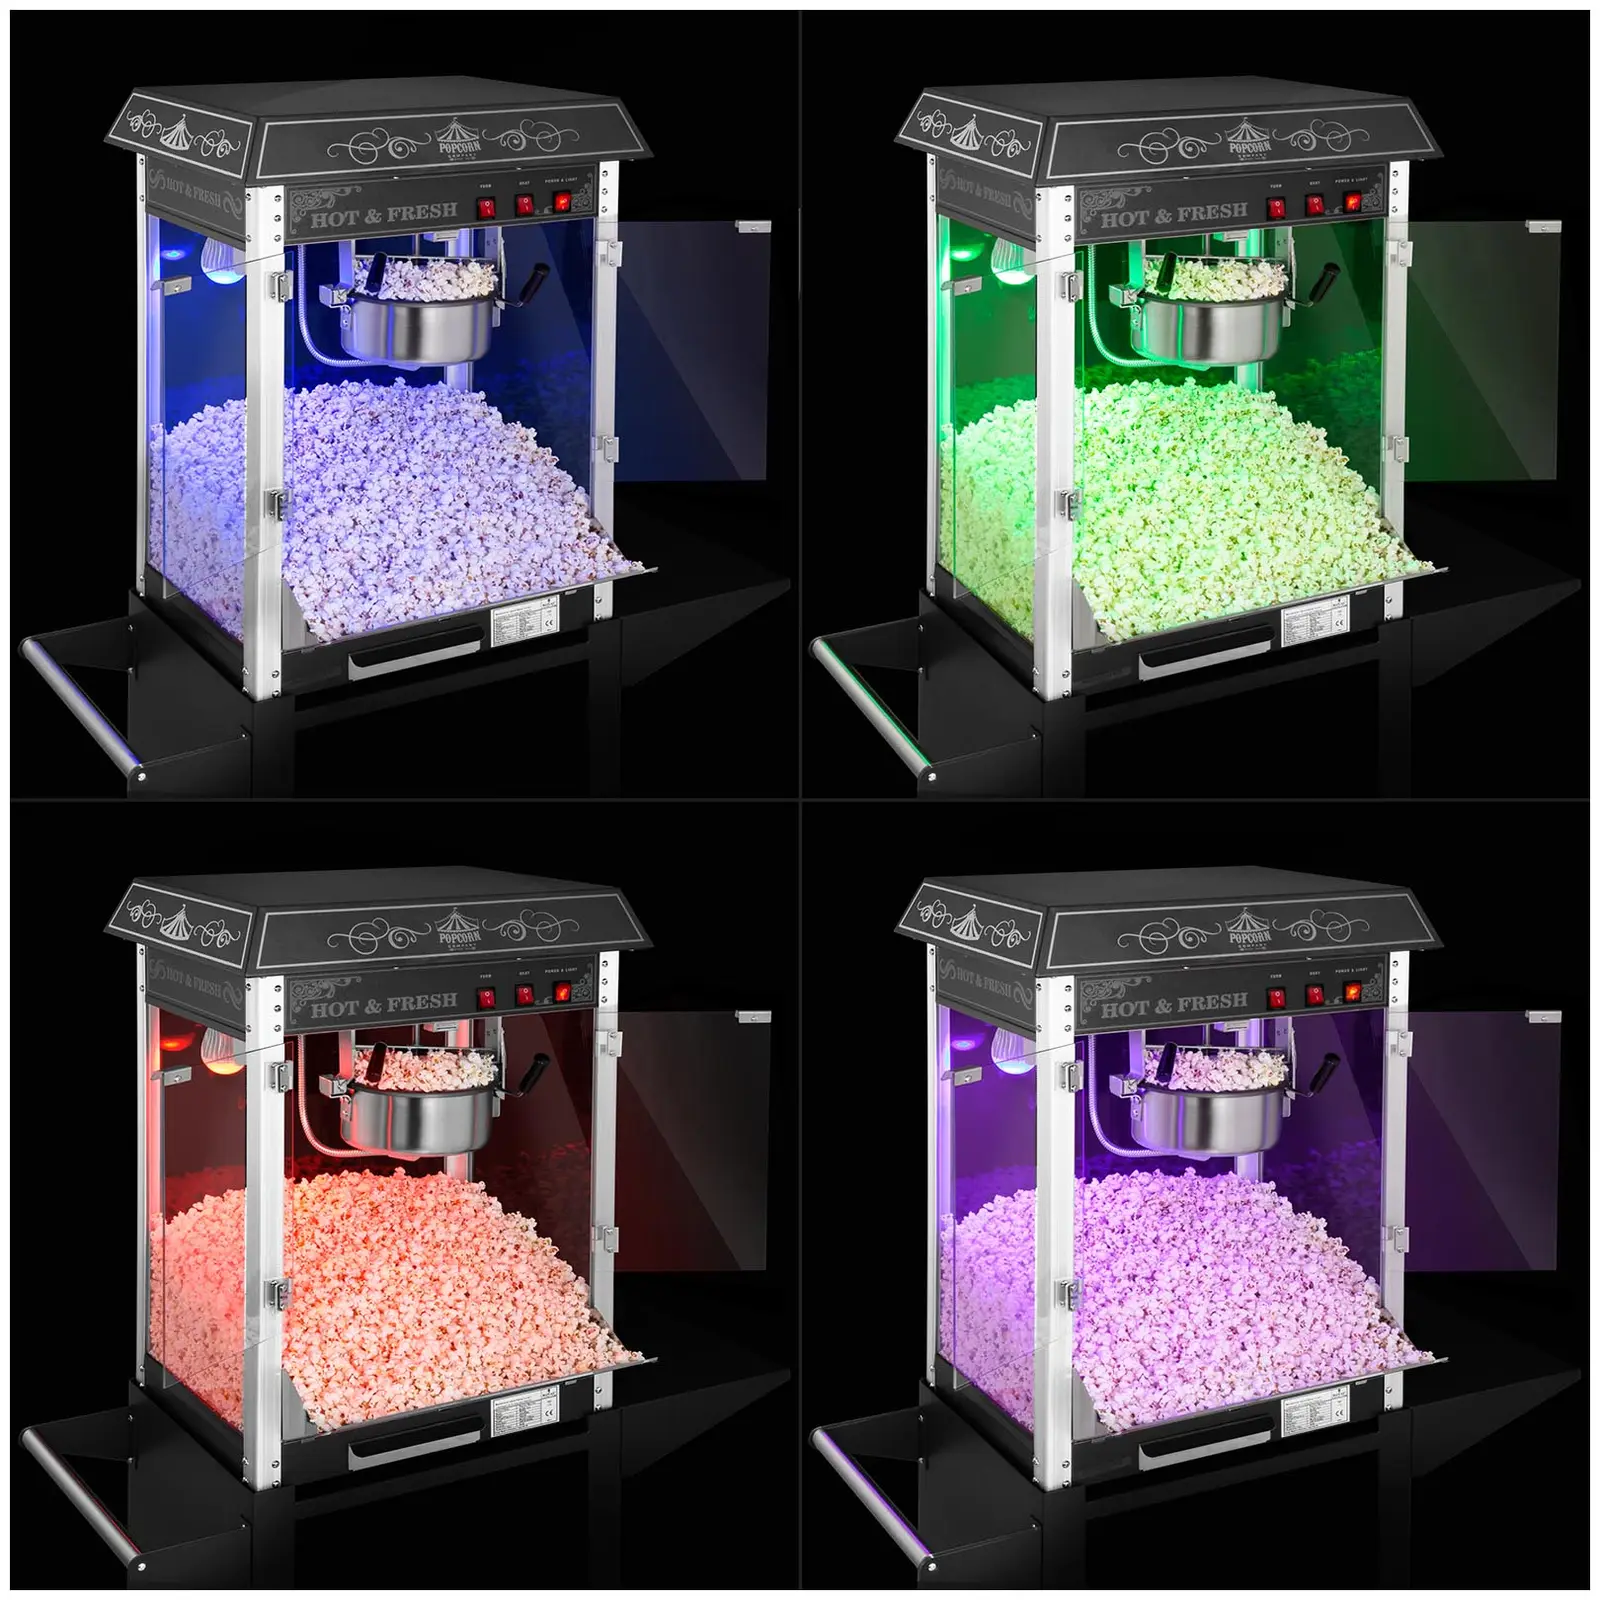 Popcornmaskine med vogn og LED-belysning - retrodesign - sort